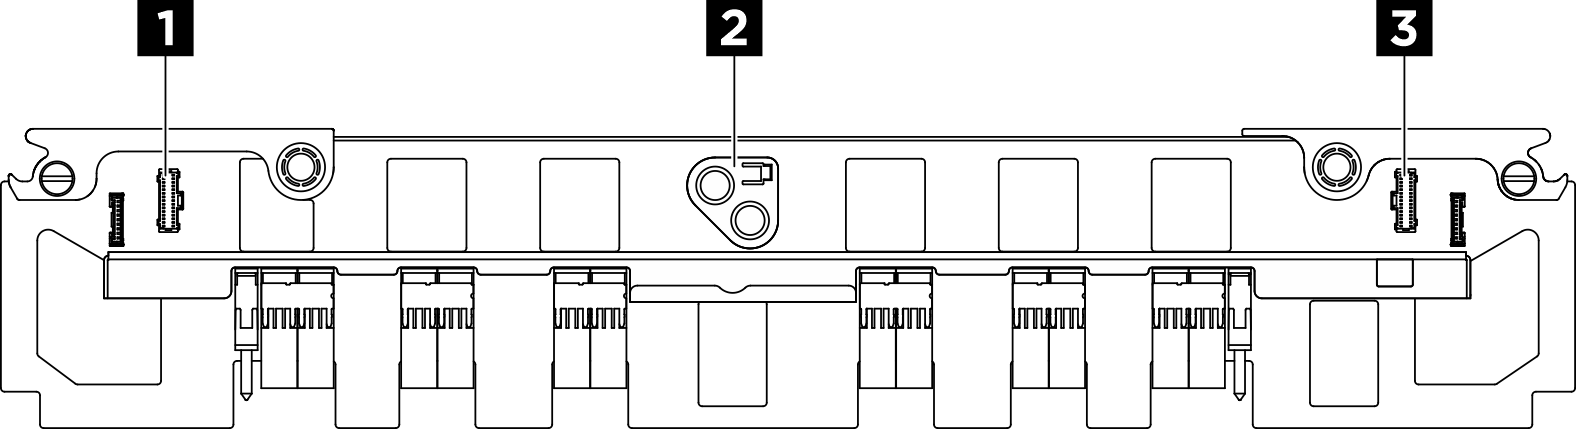 Interposeur du PSU connectors